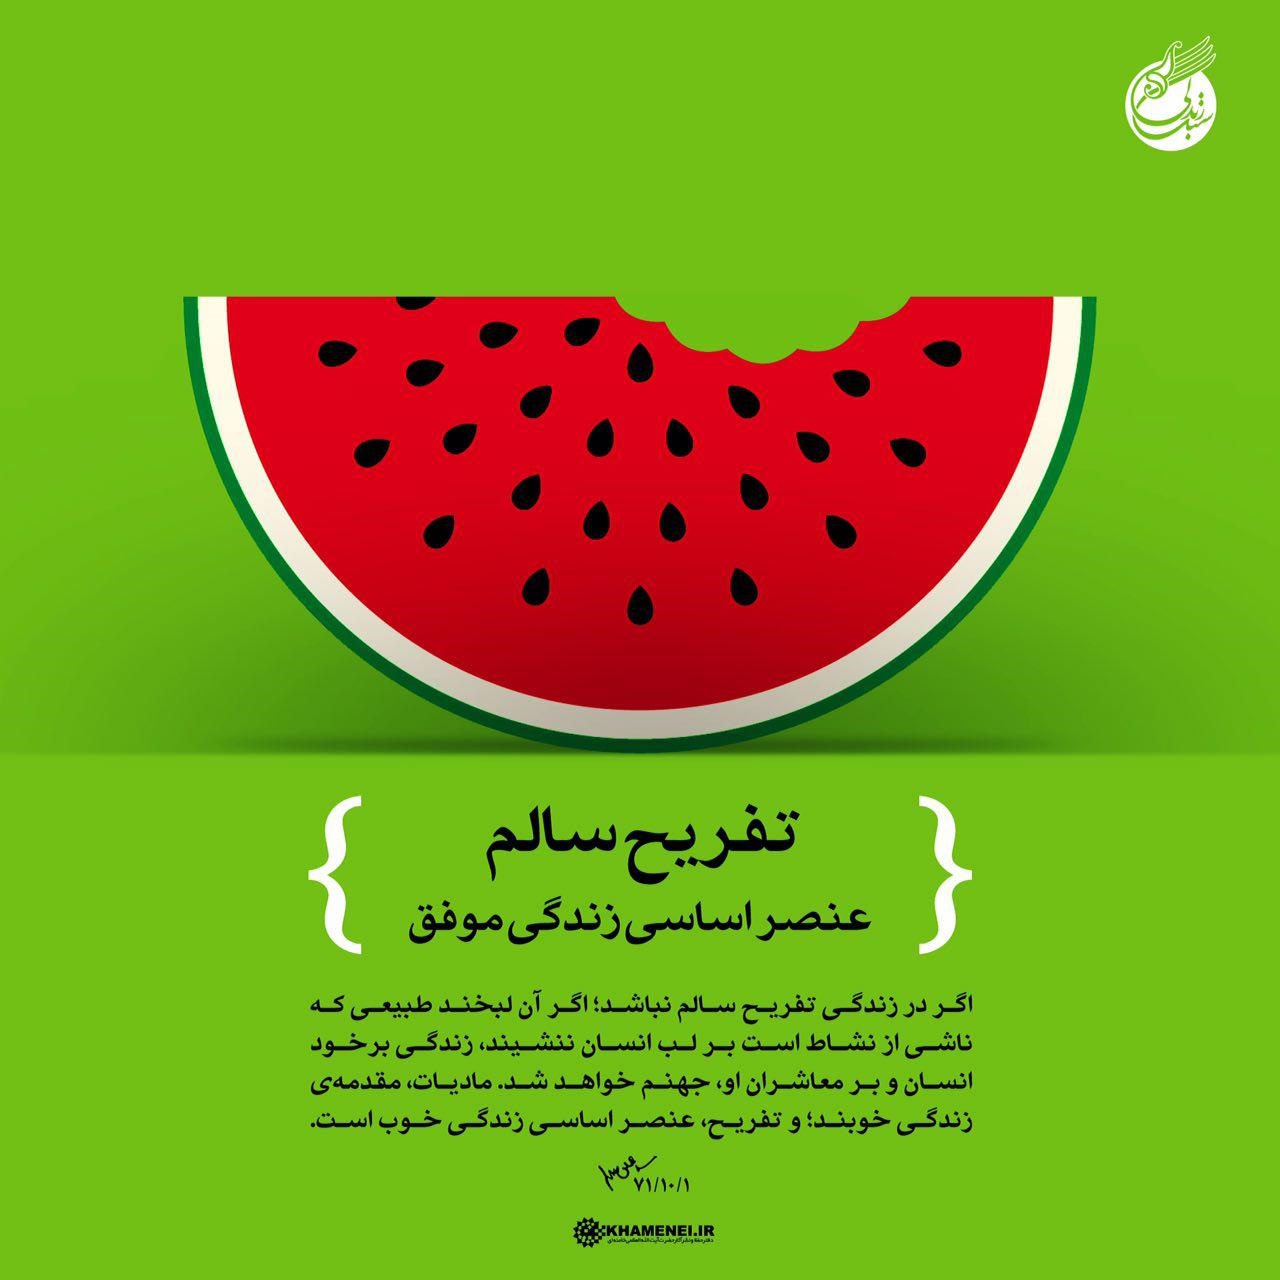 عکس | طرحی که کانال تلگرامی رهبری در شب یلدا منتشر کرد